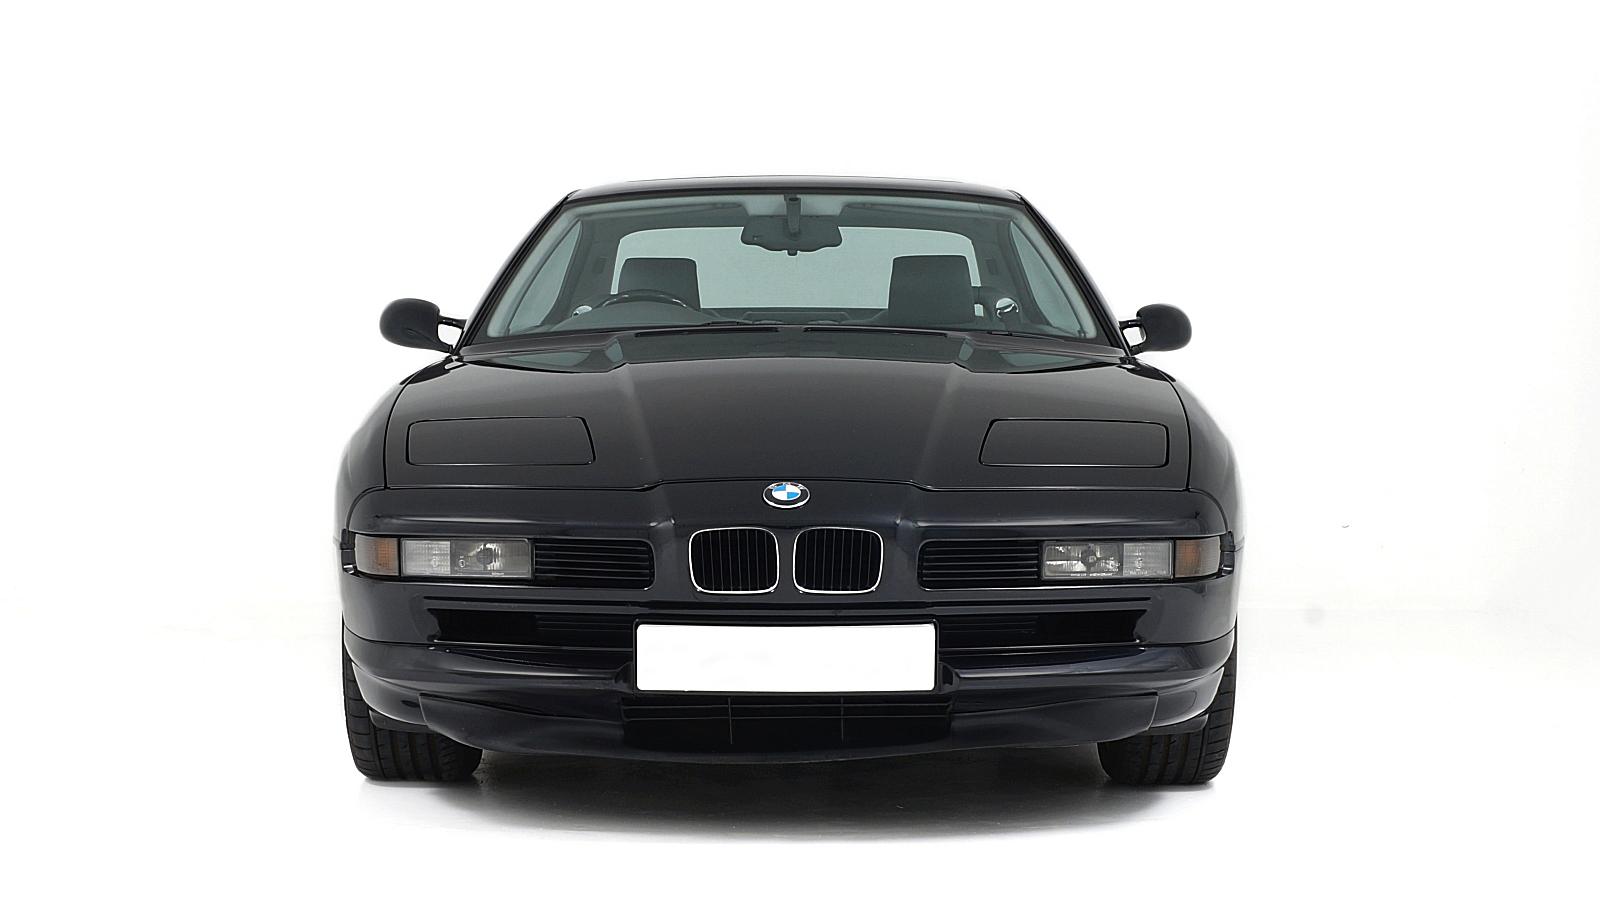 1995 BMW 840 CI